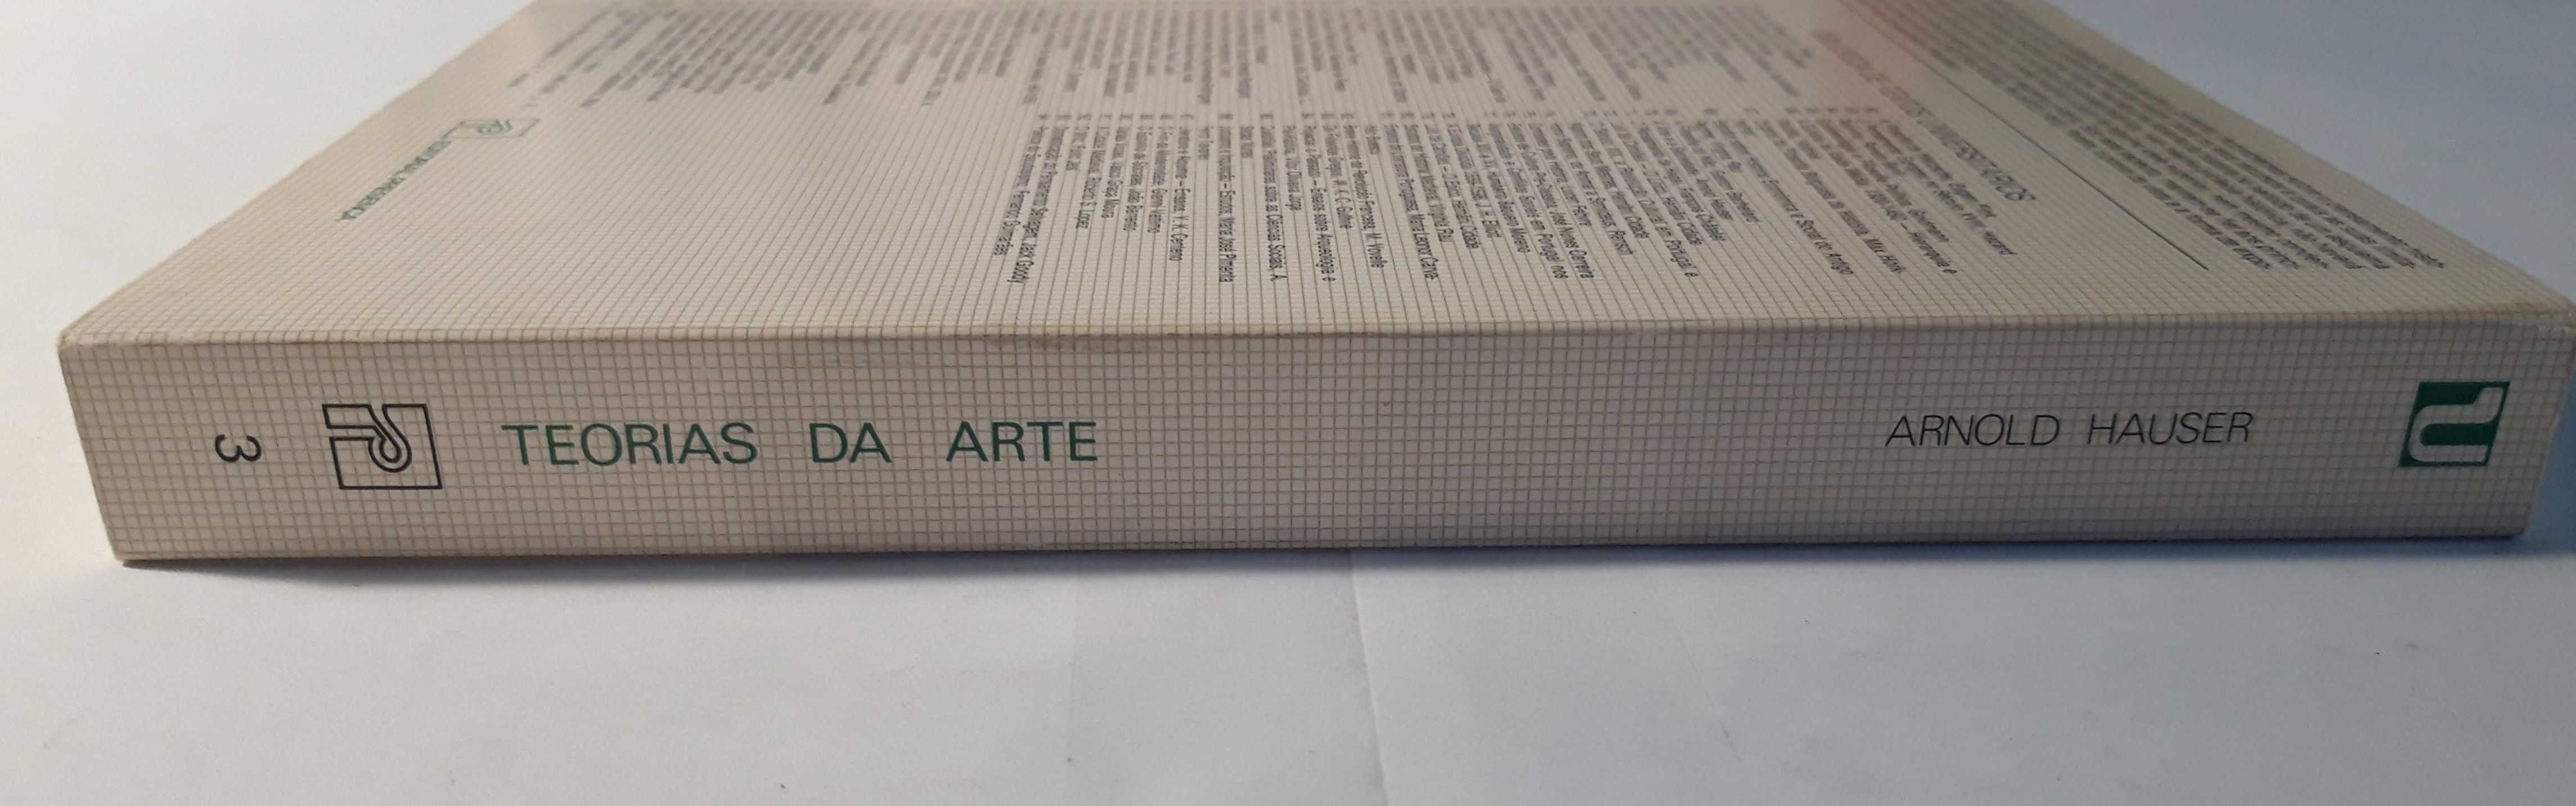 Livro Ref Par1 - Arnold Hauser - Teorias da Arte